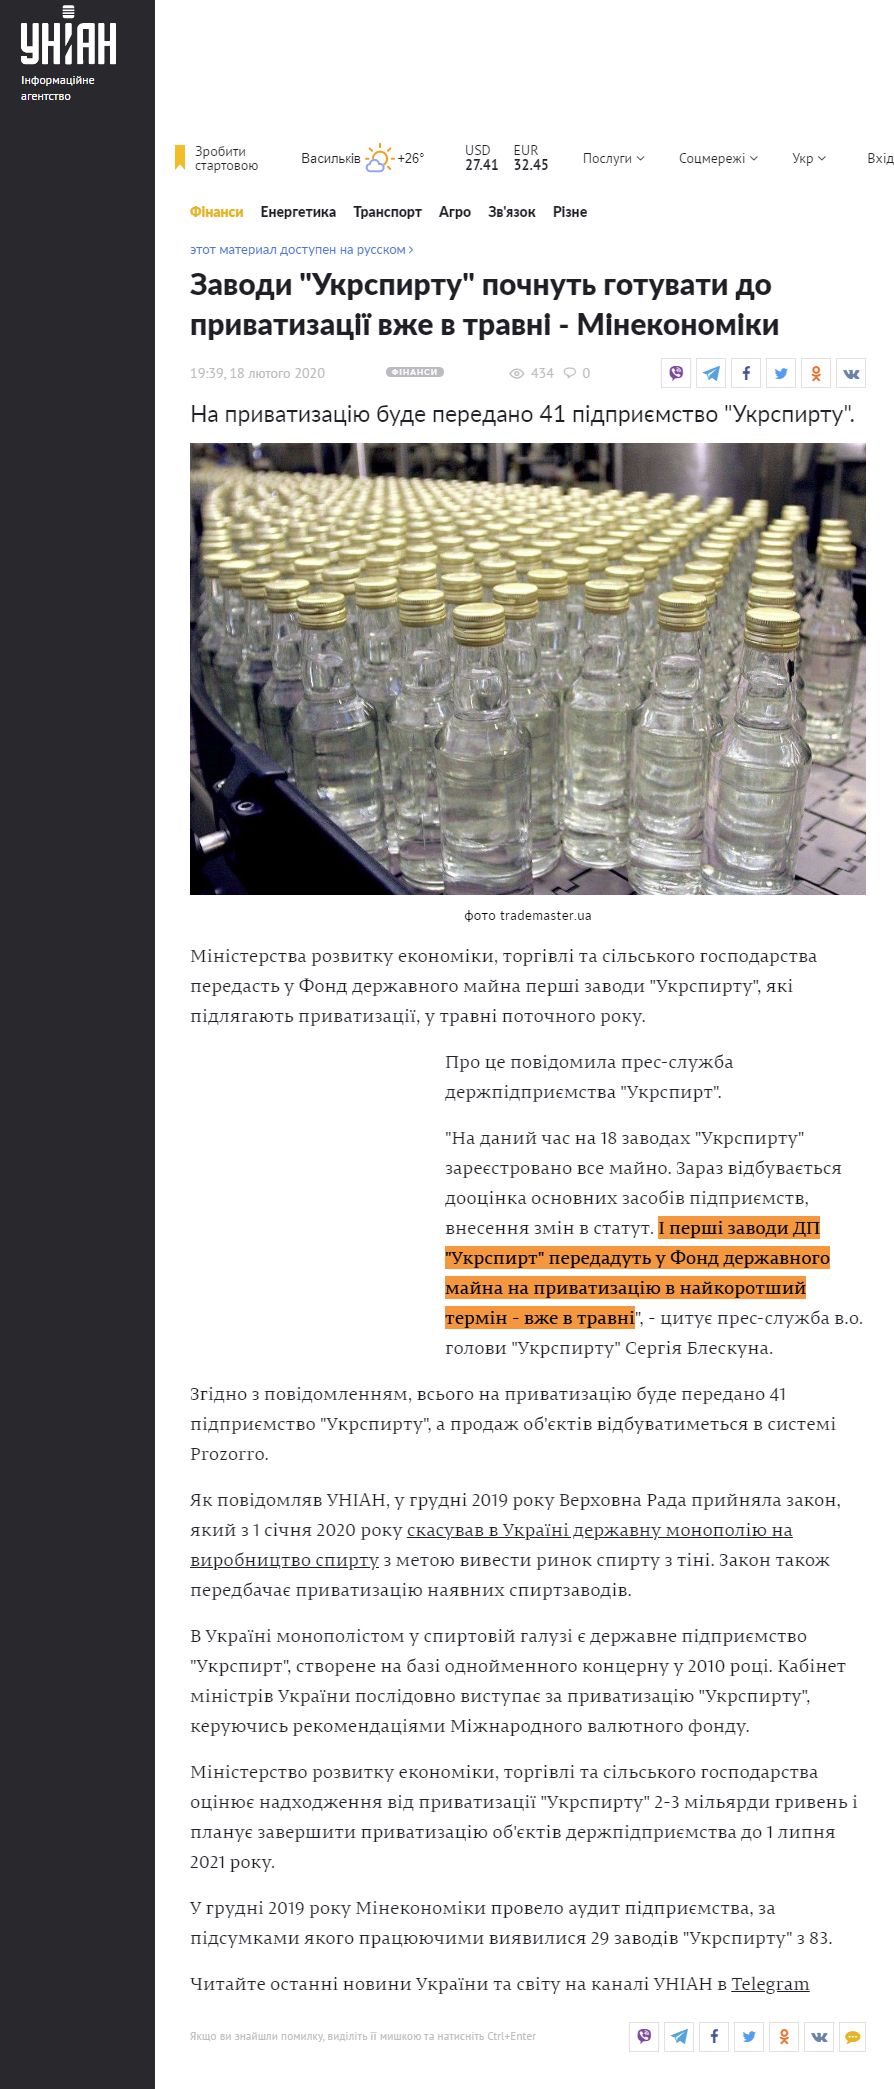 https://www.unian.ua/economics/finance/10880237-zavodi-ukrspirtu-pochnut-gotuvati-do-privatizaciji-vzhe-v-travni-minekonomiki.html